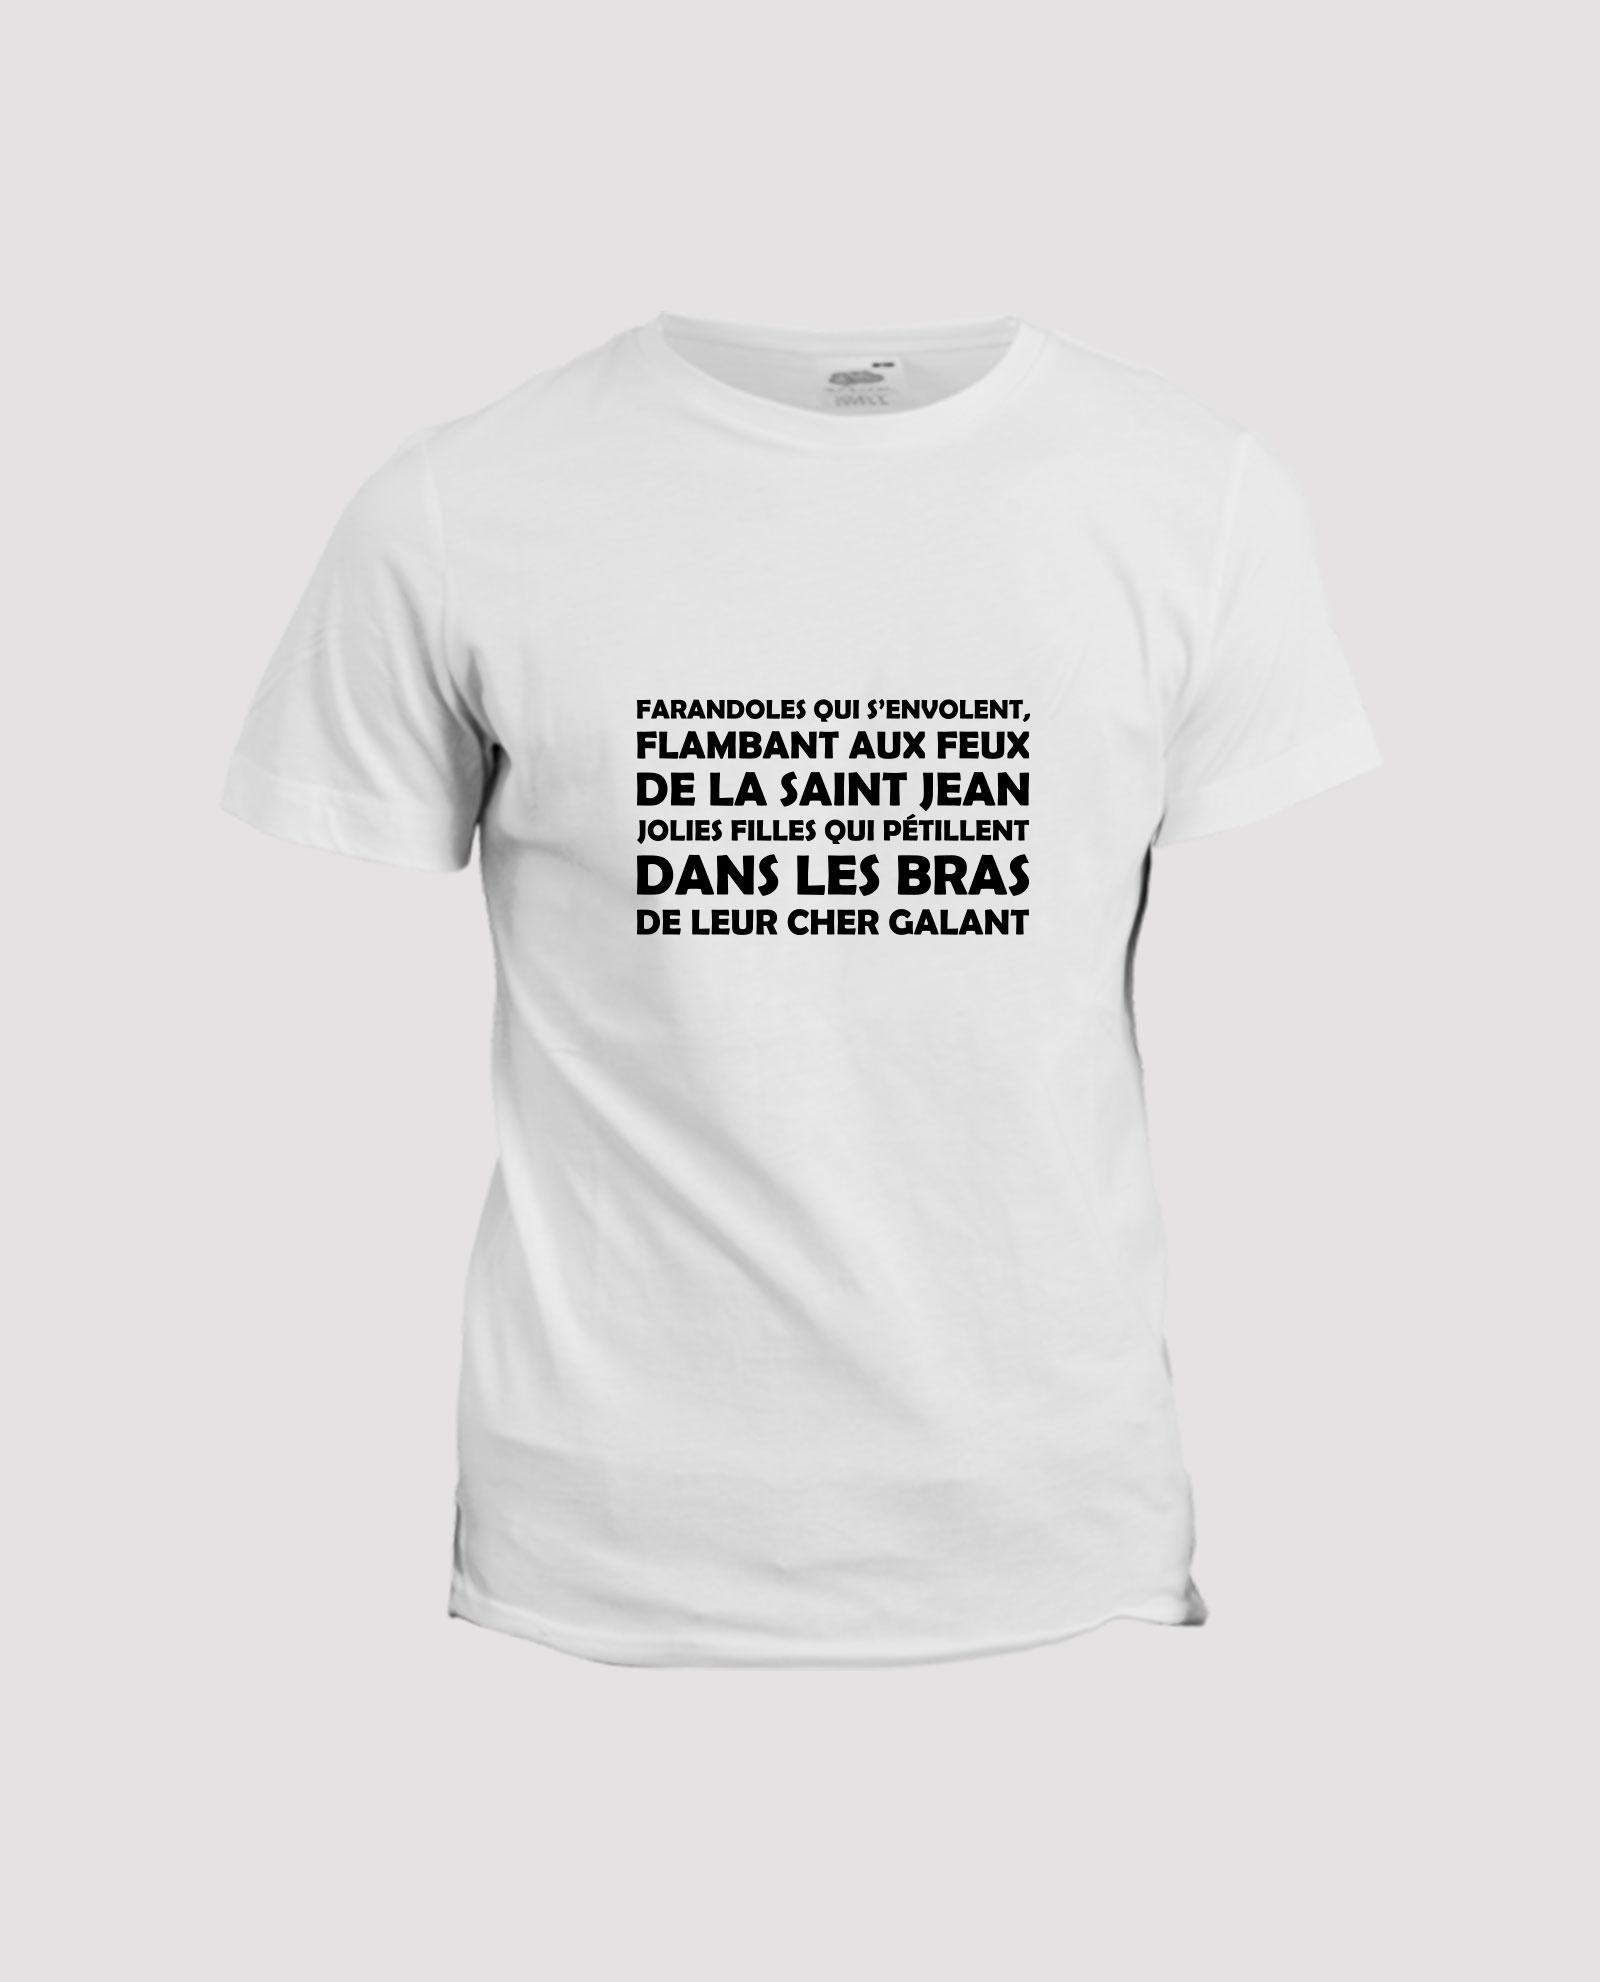 la-ligne-shop-t-shirt-rugby-chant-supporter-rugby-mauleon-les-fetes-de-mauleon-blanc-fond-gris-v2